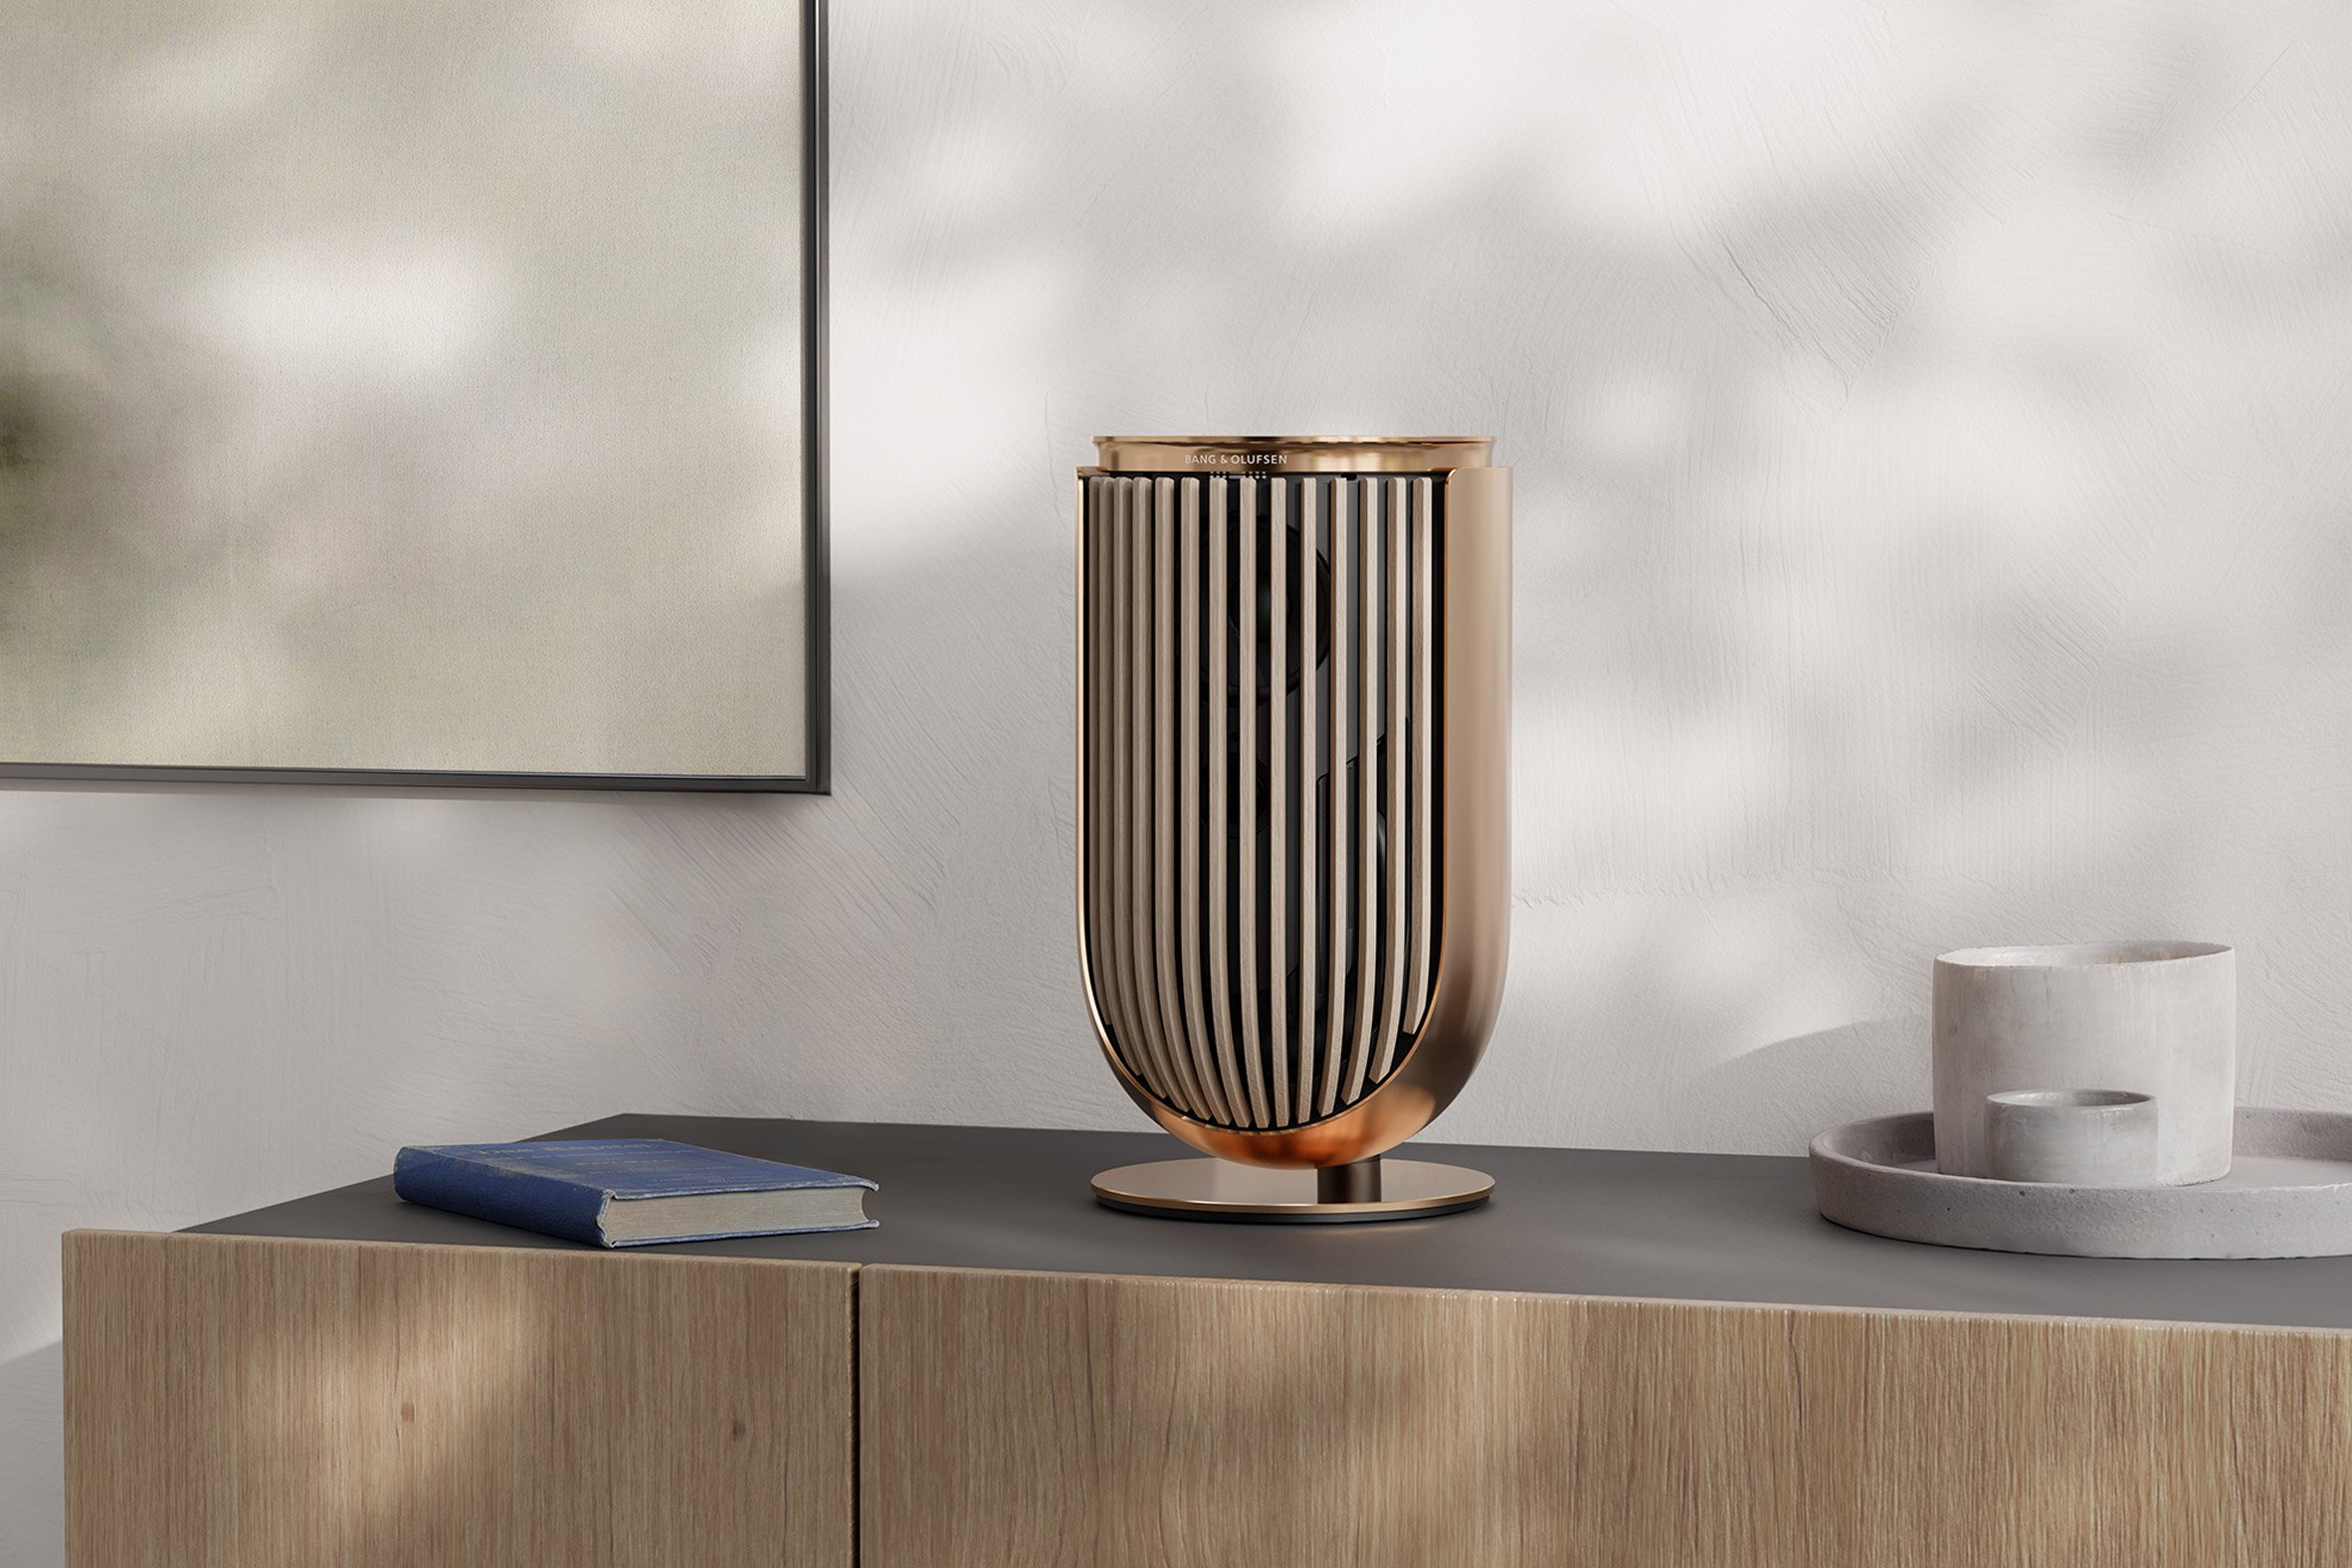 Modular speaker by Bang & Olufsen